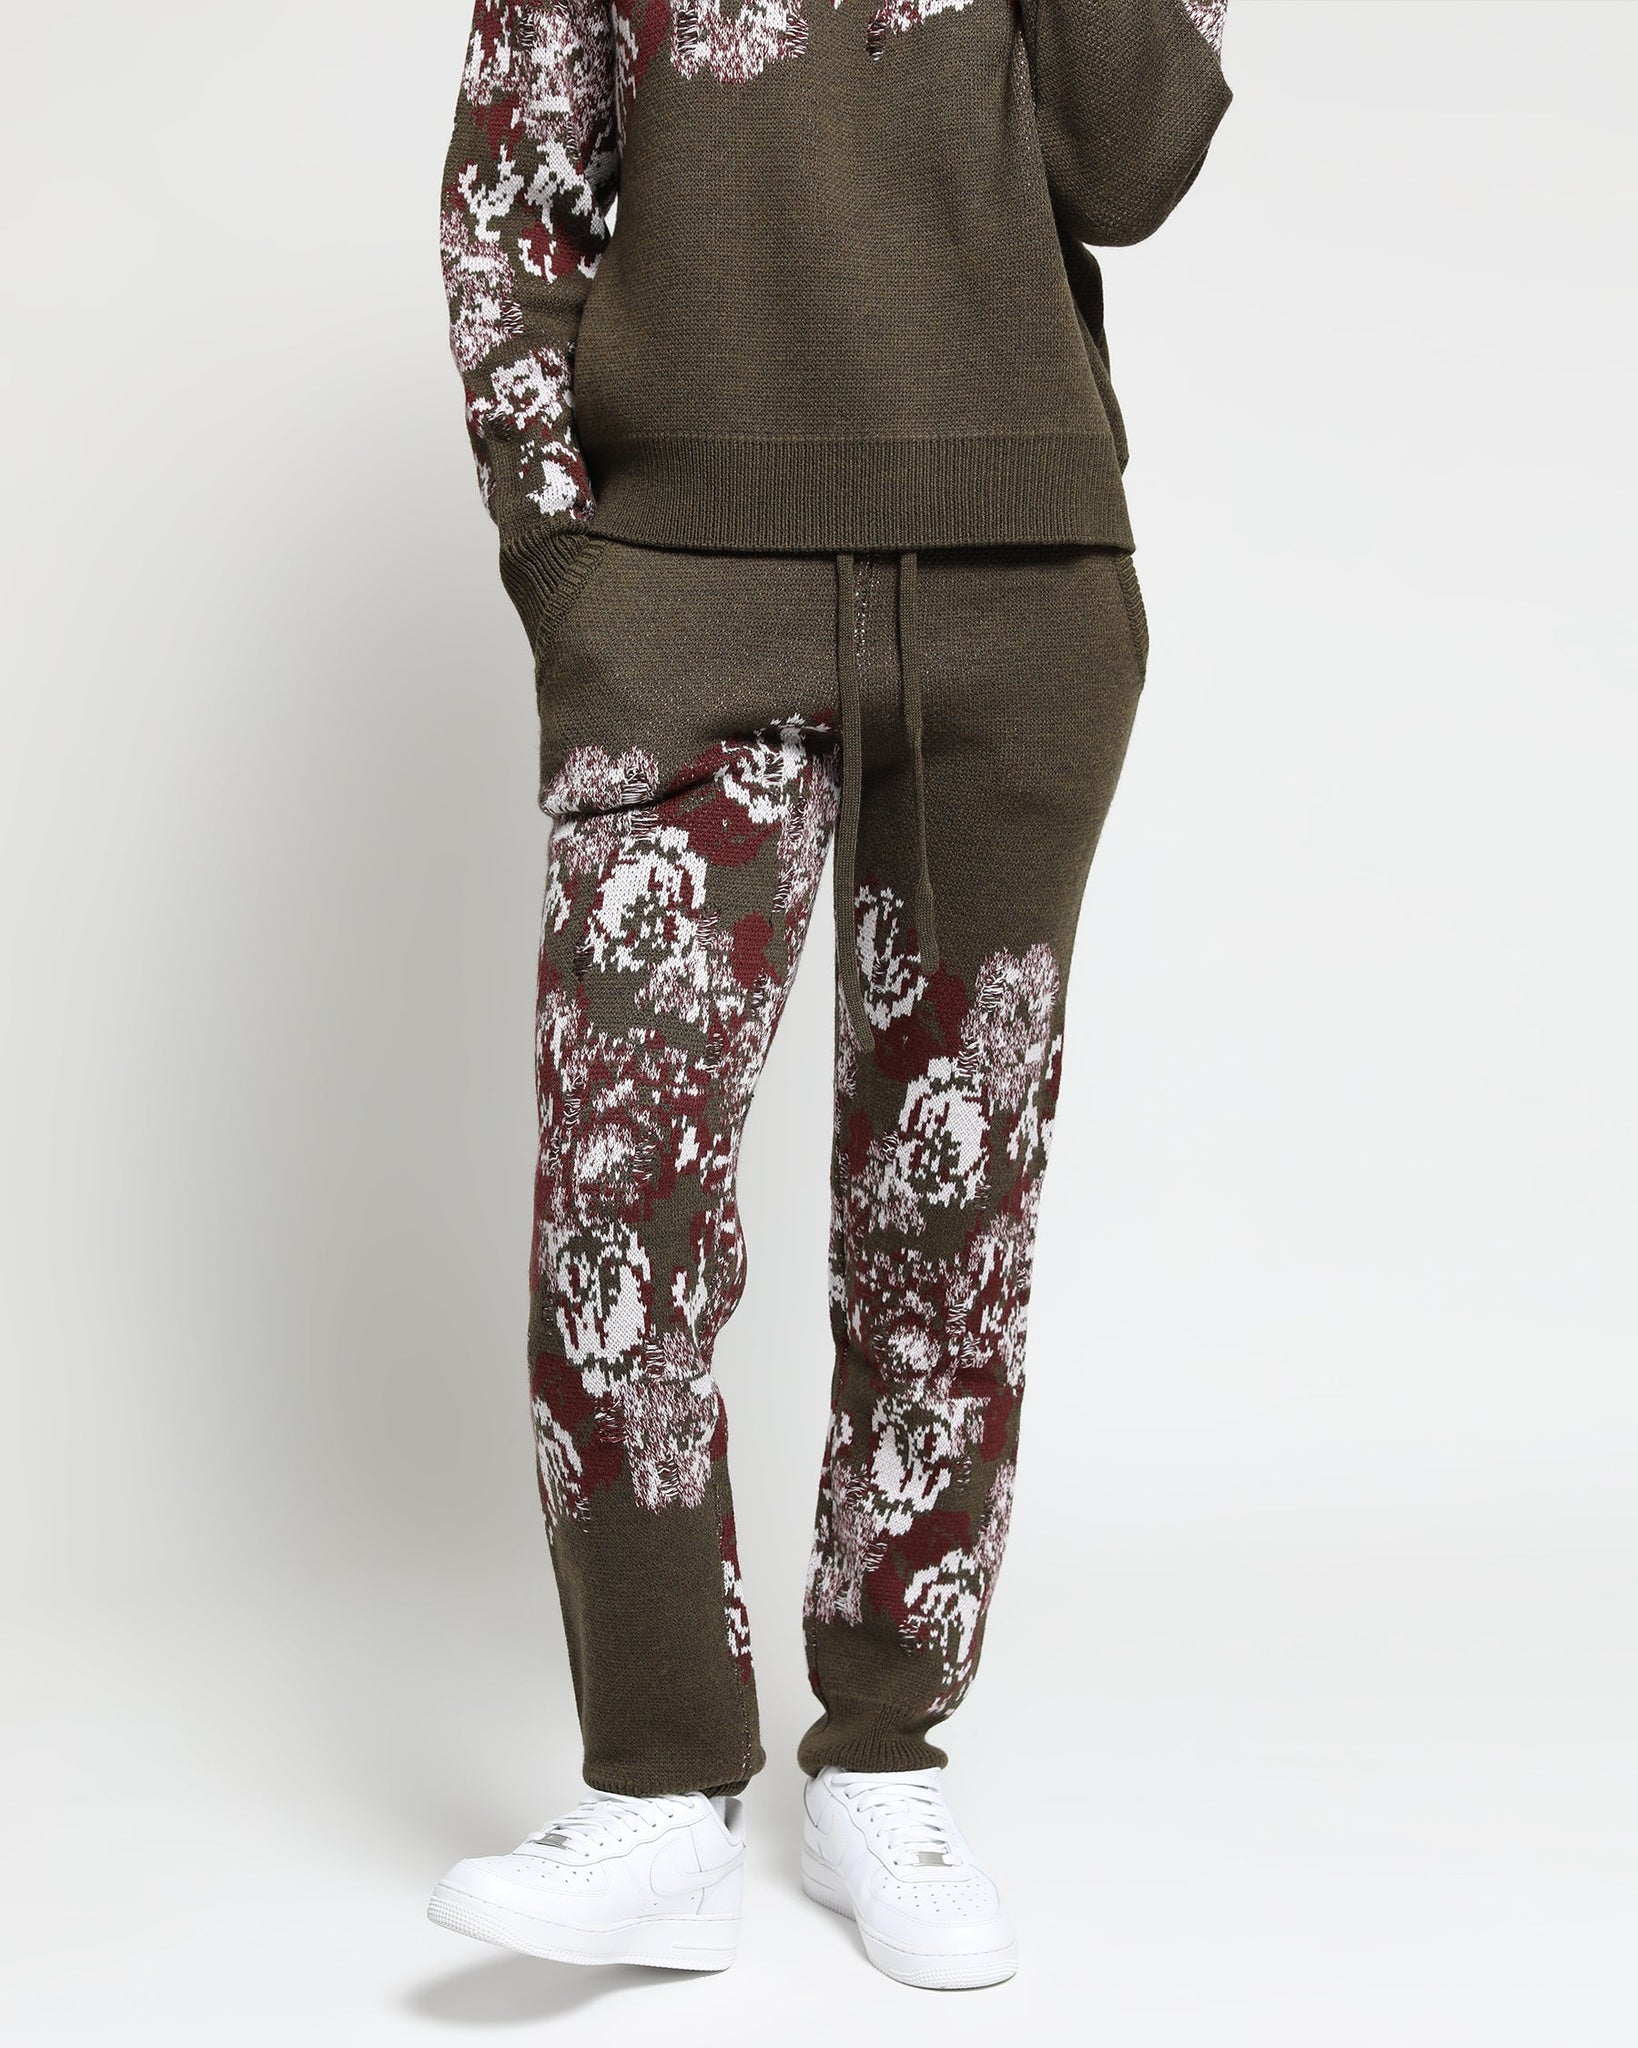 Hanging Floral Distressed Sweater Pant - twentytees